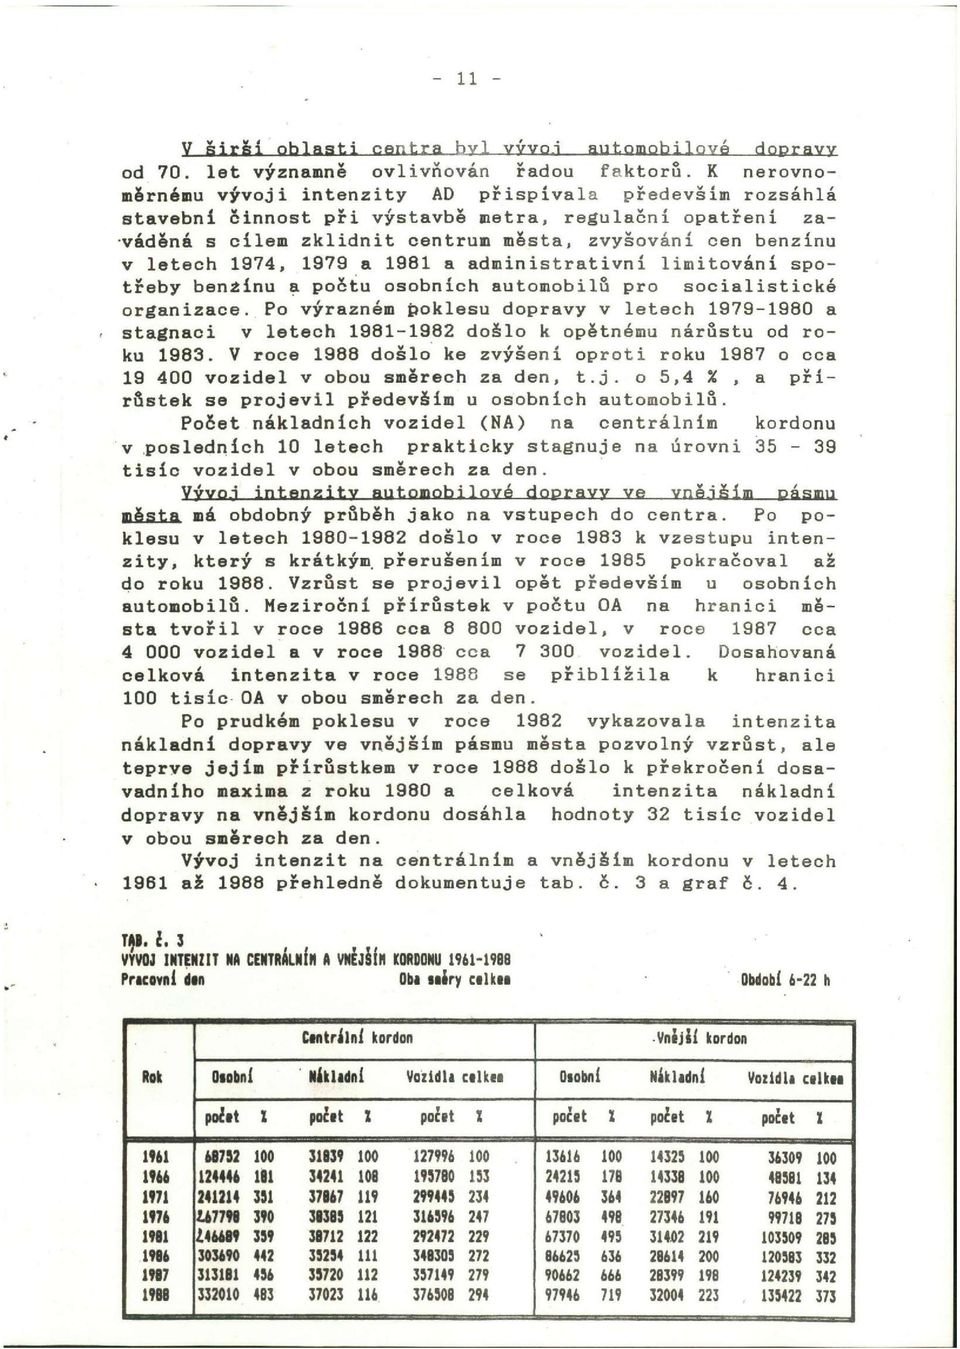 1974, 1979 a 1981 a administrativní limitování spotřeby benzínu a počtu osobních automobilu pro socialistické organizace.